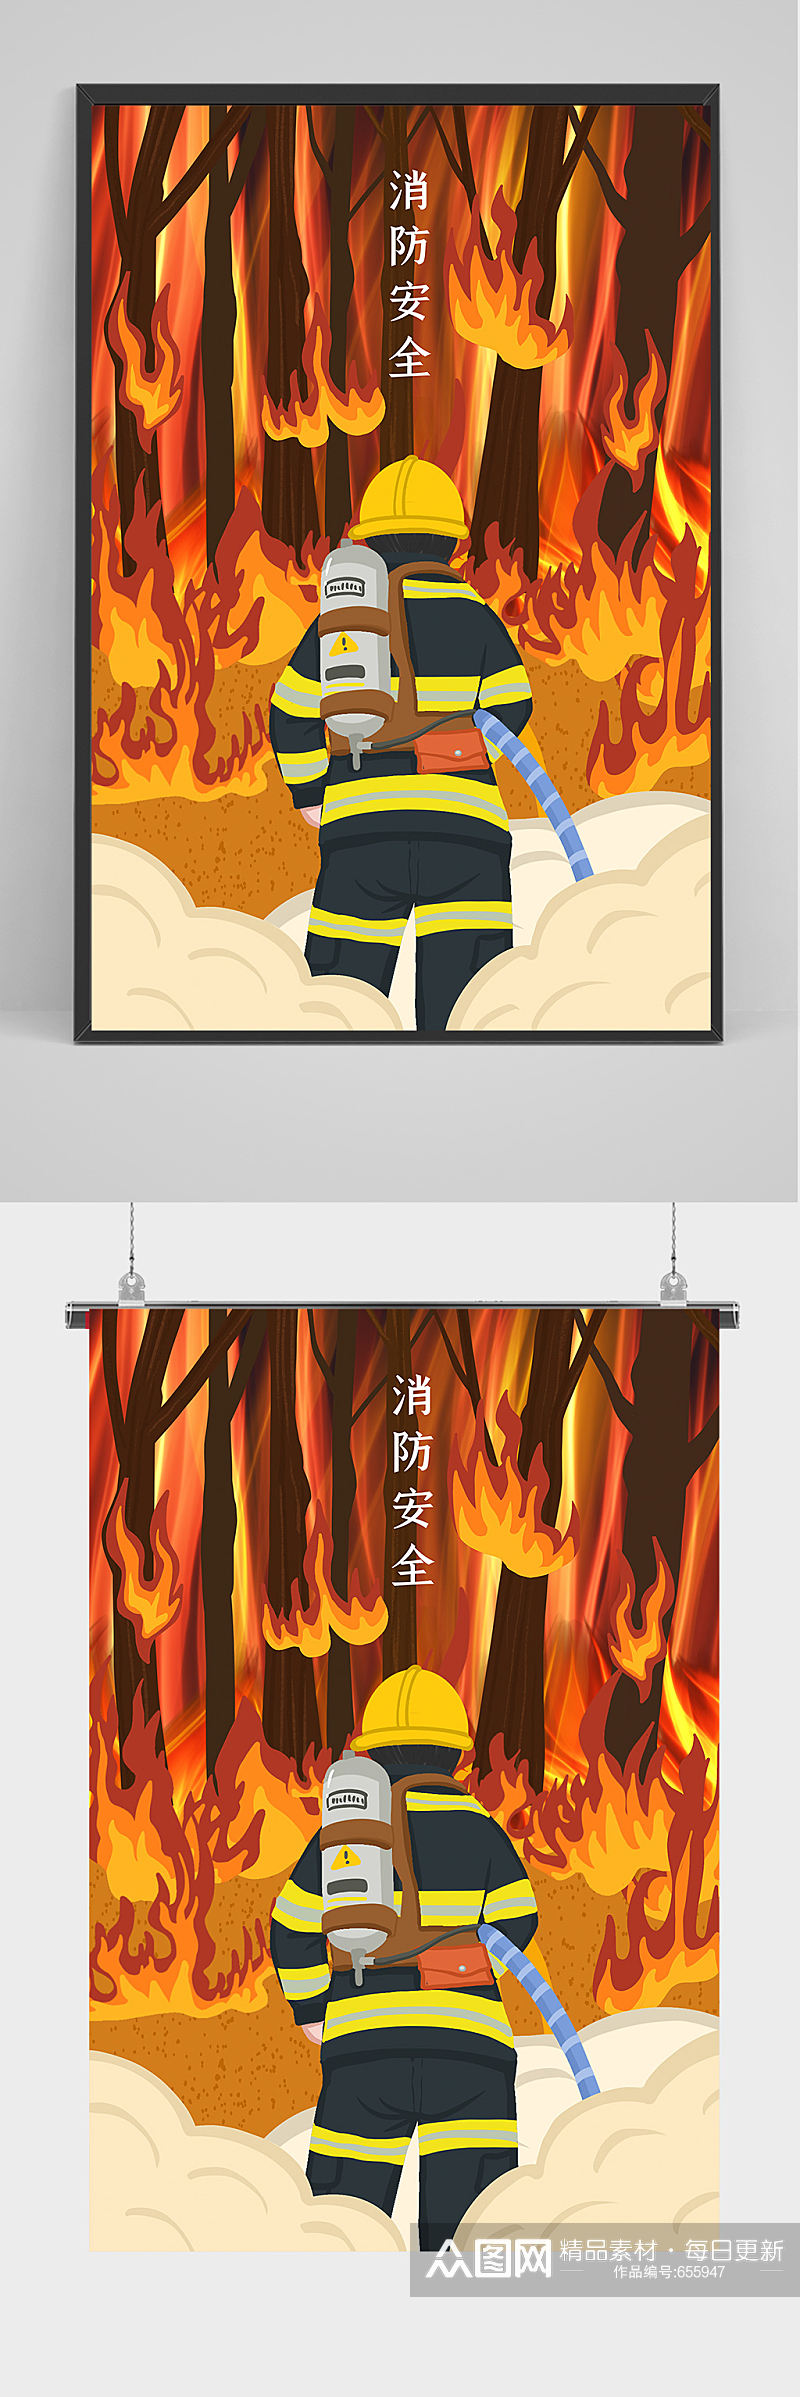 消防安全插画海报设计素材